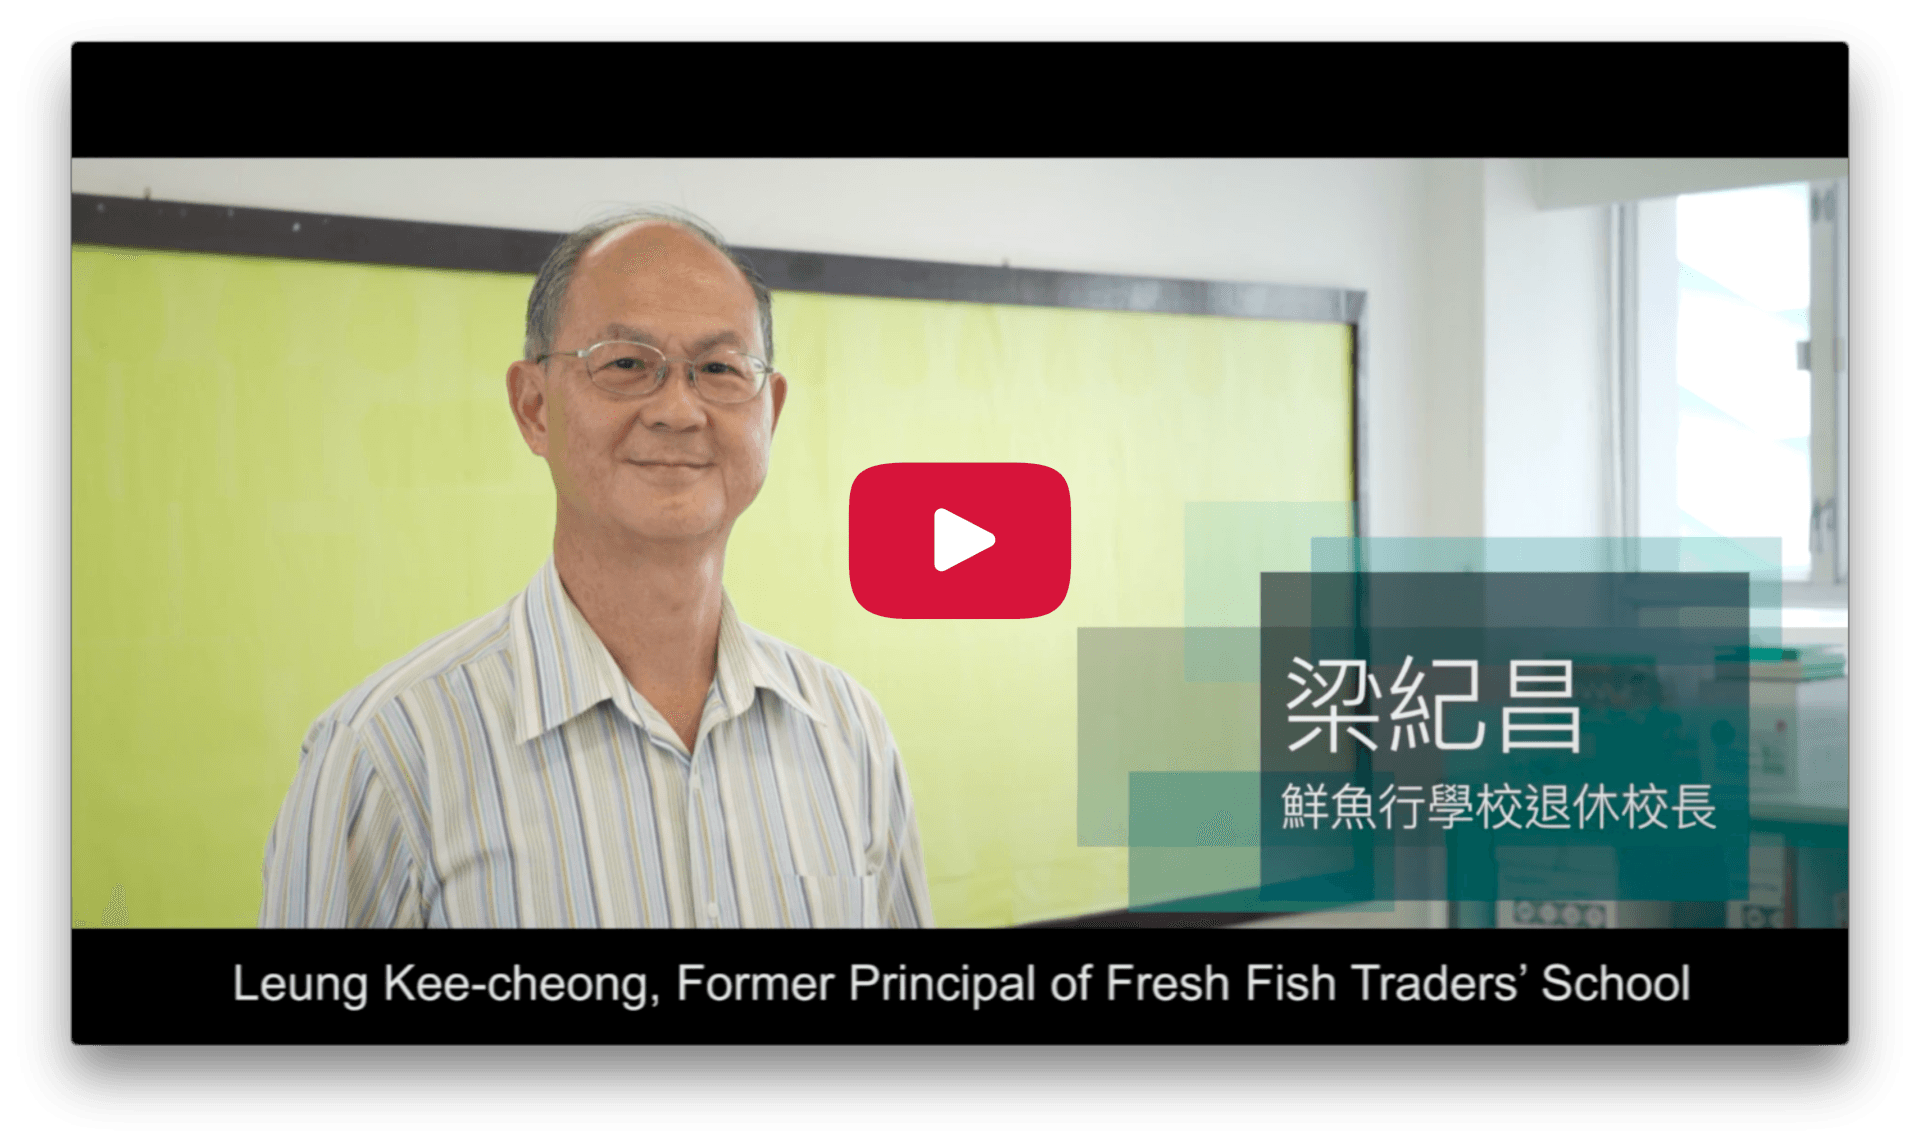 2017 Character Day Hong Kong Ambassador - Leung Kee Cheong